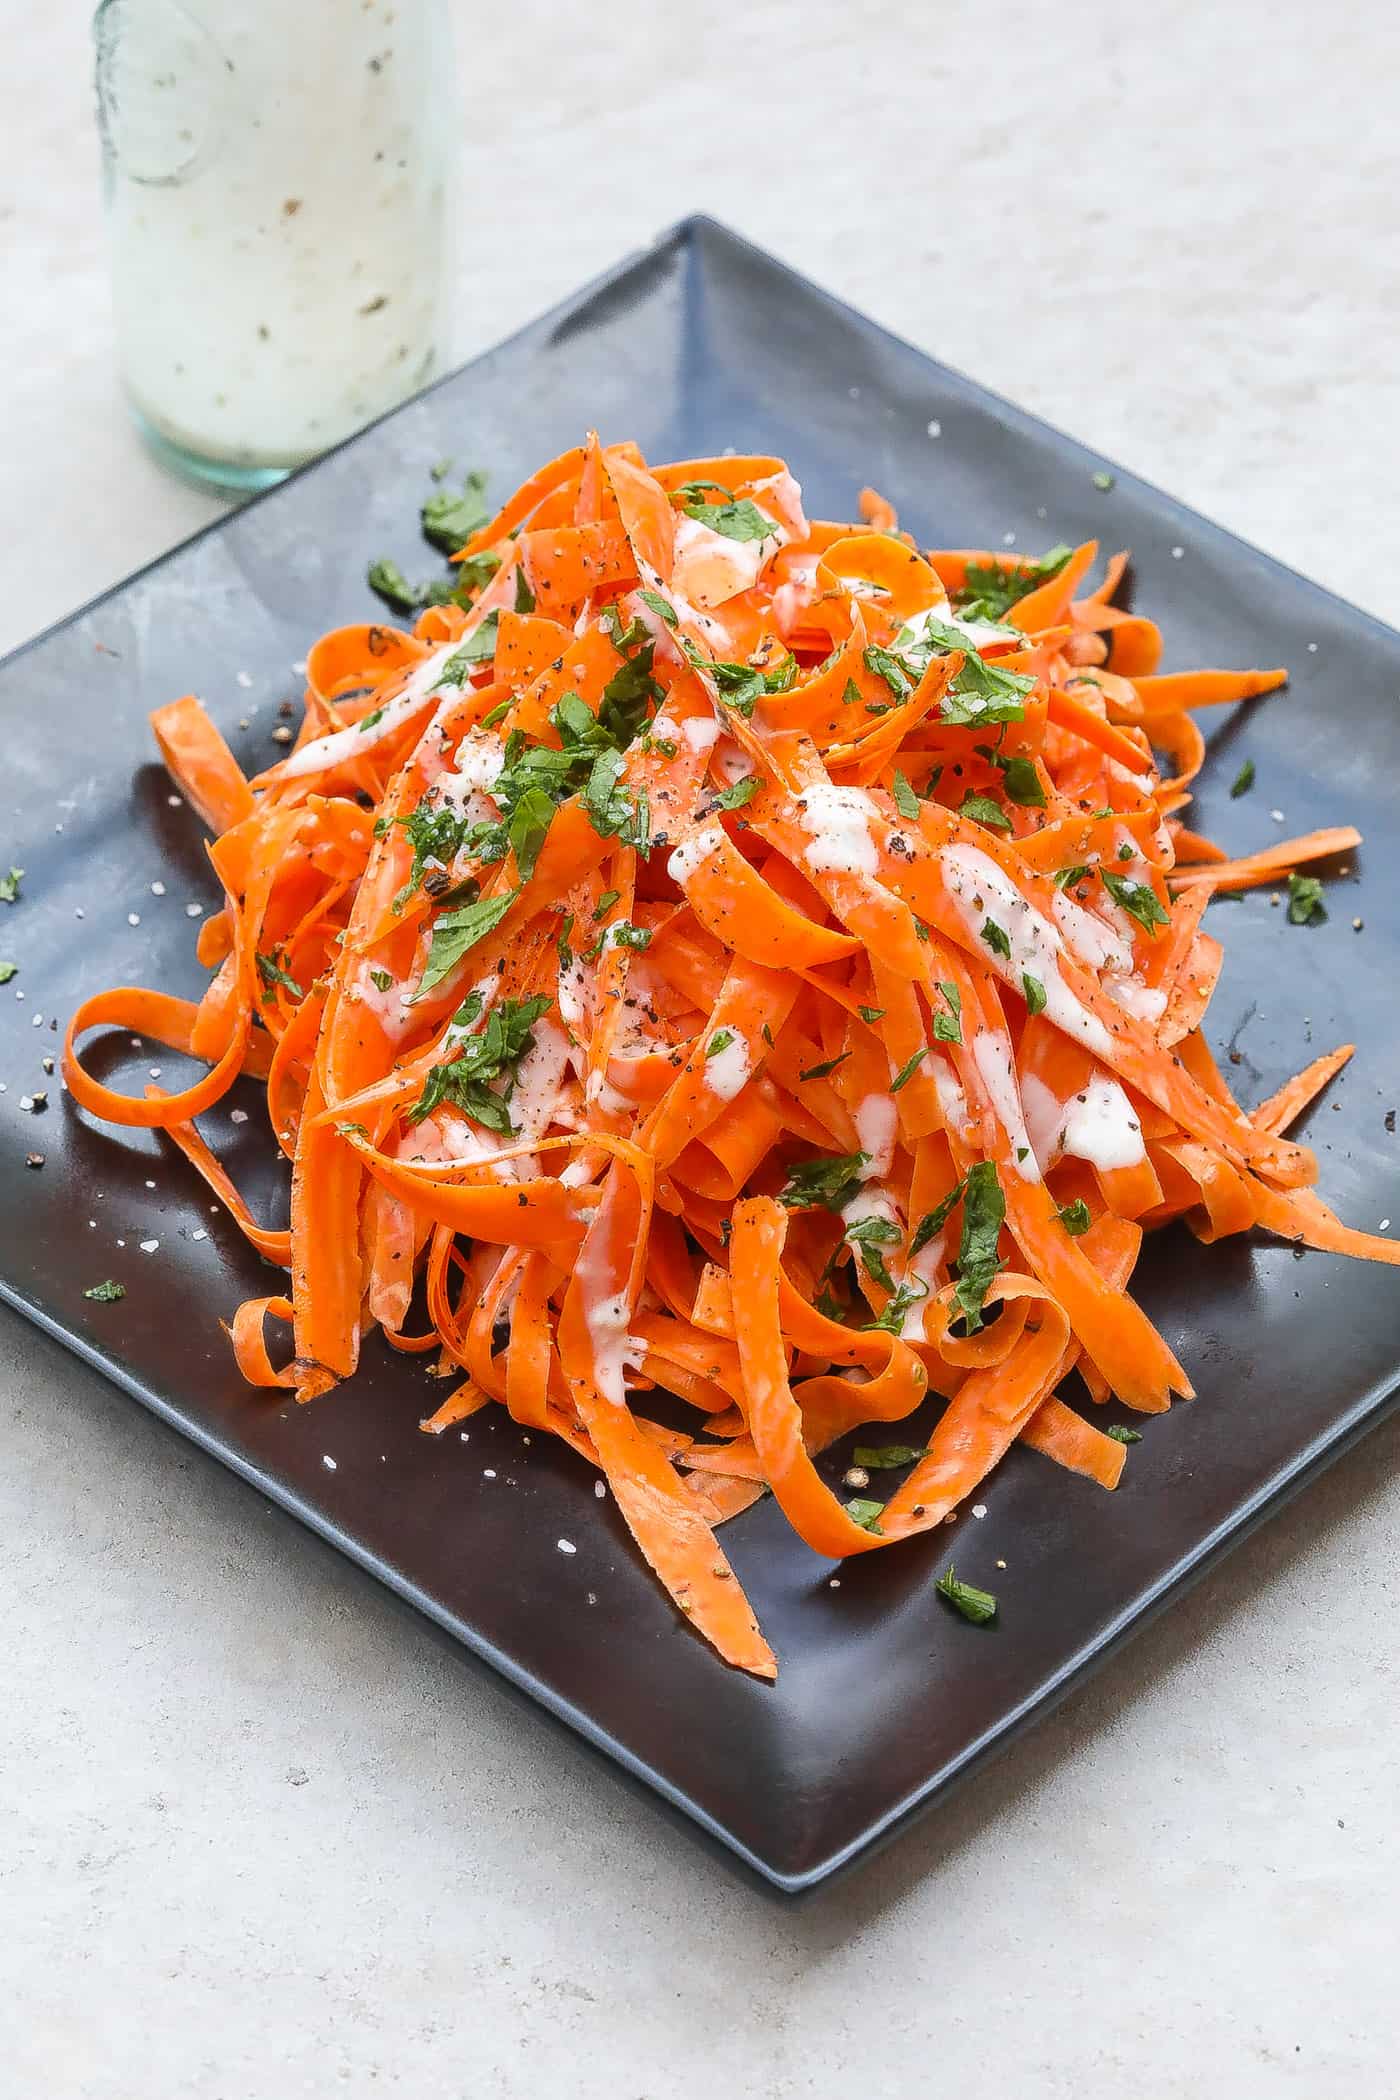 shedded carrot salad on black plate